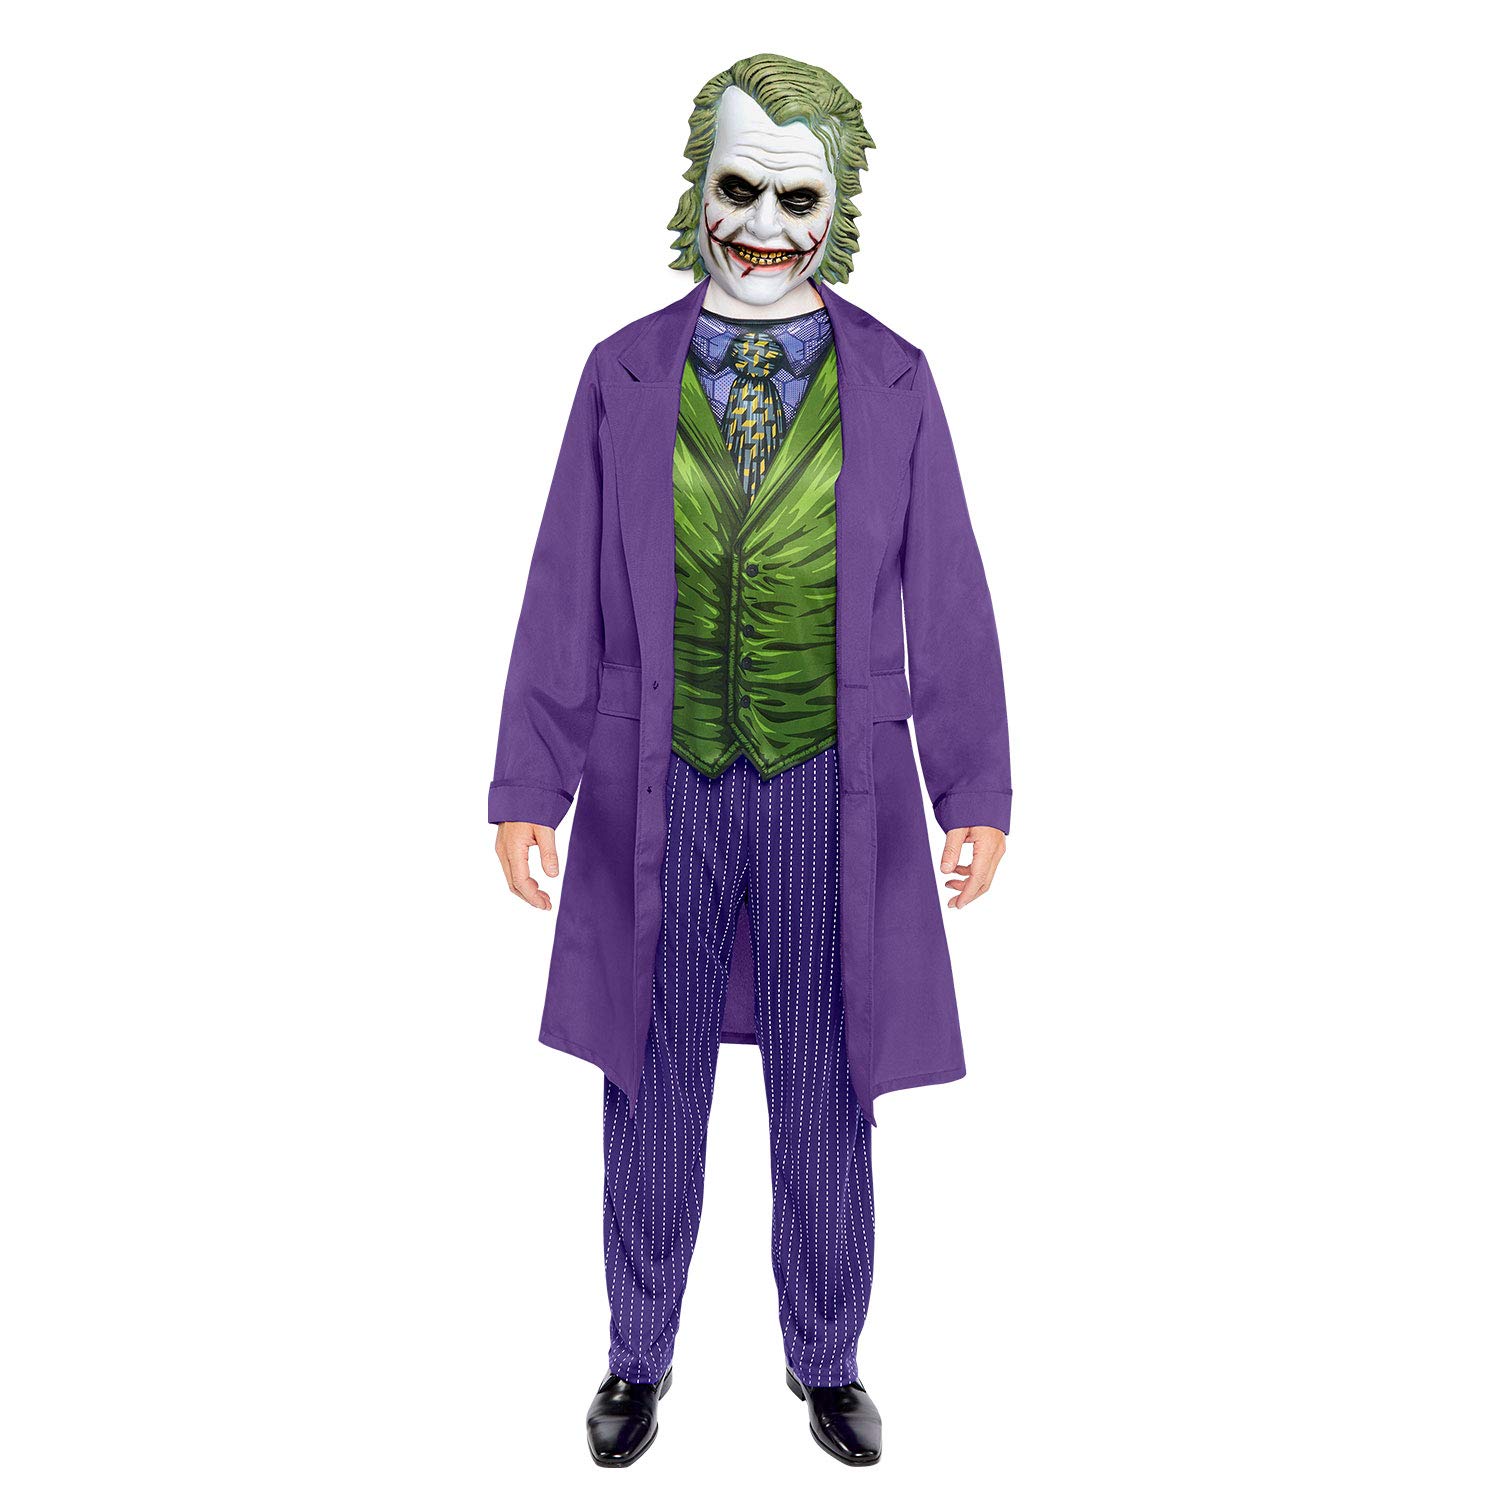 Abbigliamento Amscan: Adult Costume Joker Movie Xl NUOVO SIGILLATO, EDIZIONE DEL 09/11/2021 SUBITO DISPONIBILE